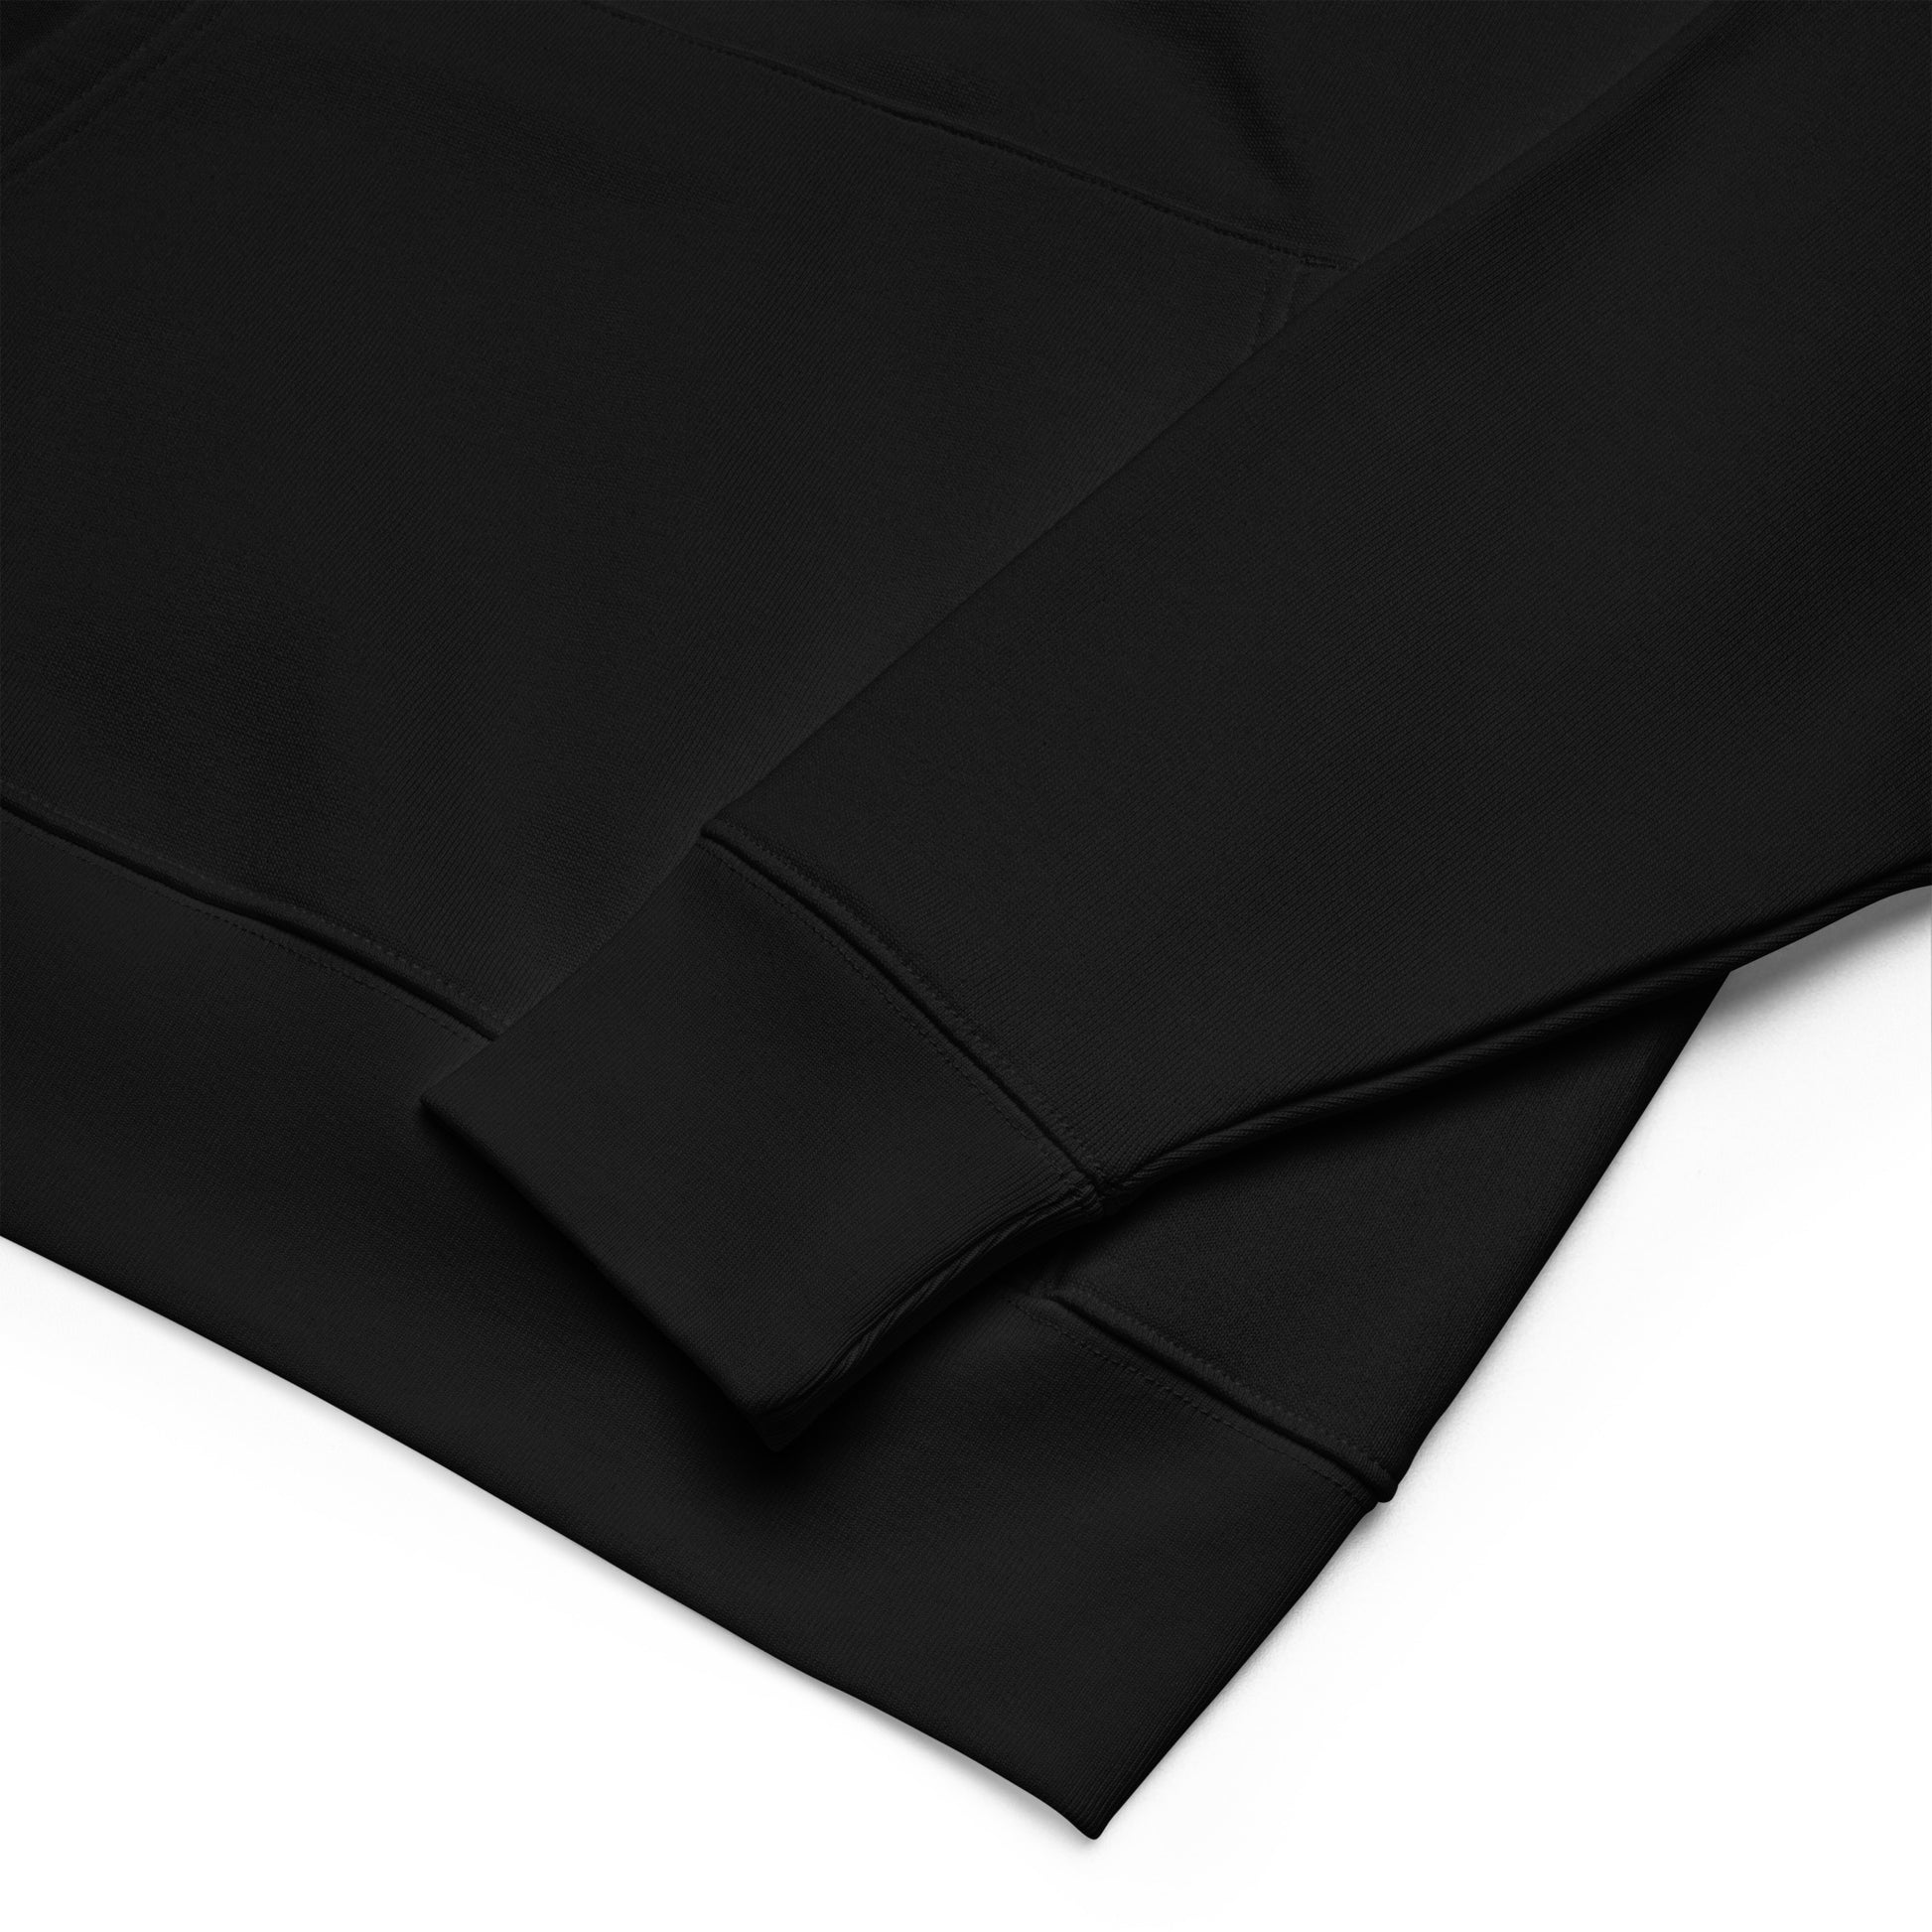 Ping Pong Platypus | Sustainable Hoodie in black sleeve detail